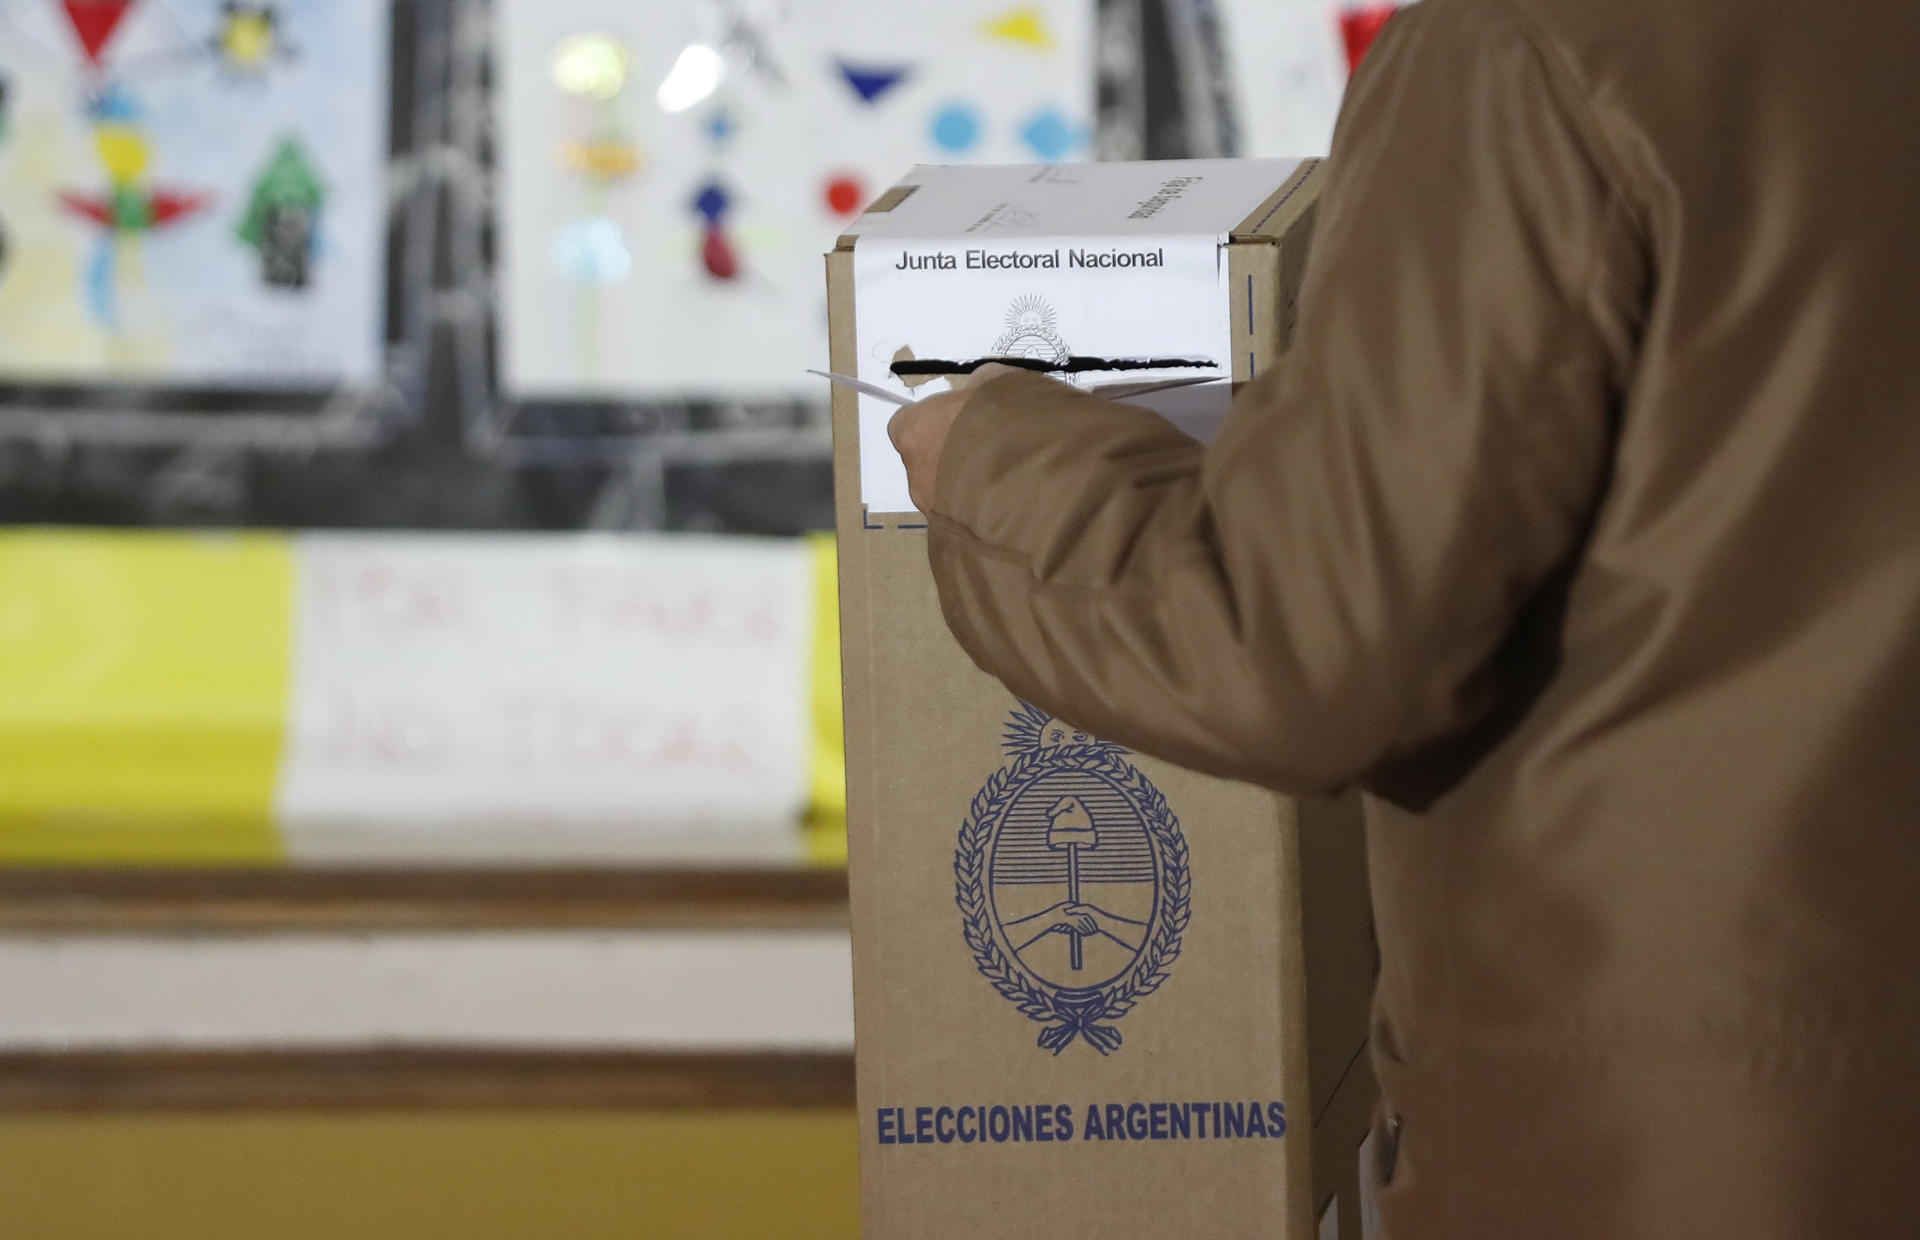 Los colegios de votación cerrarán alrededor de las 18.00 horas (21.00 GMT) para iniciar el escrutinio. Fotografía de archivo. EFE/David Fernández